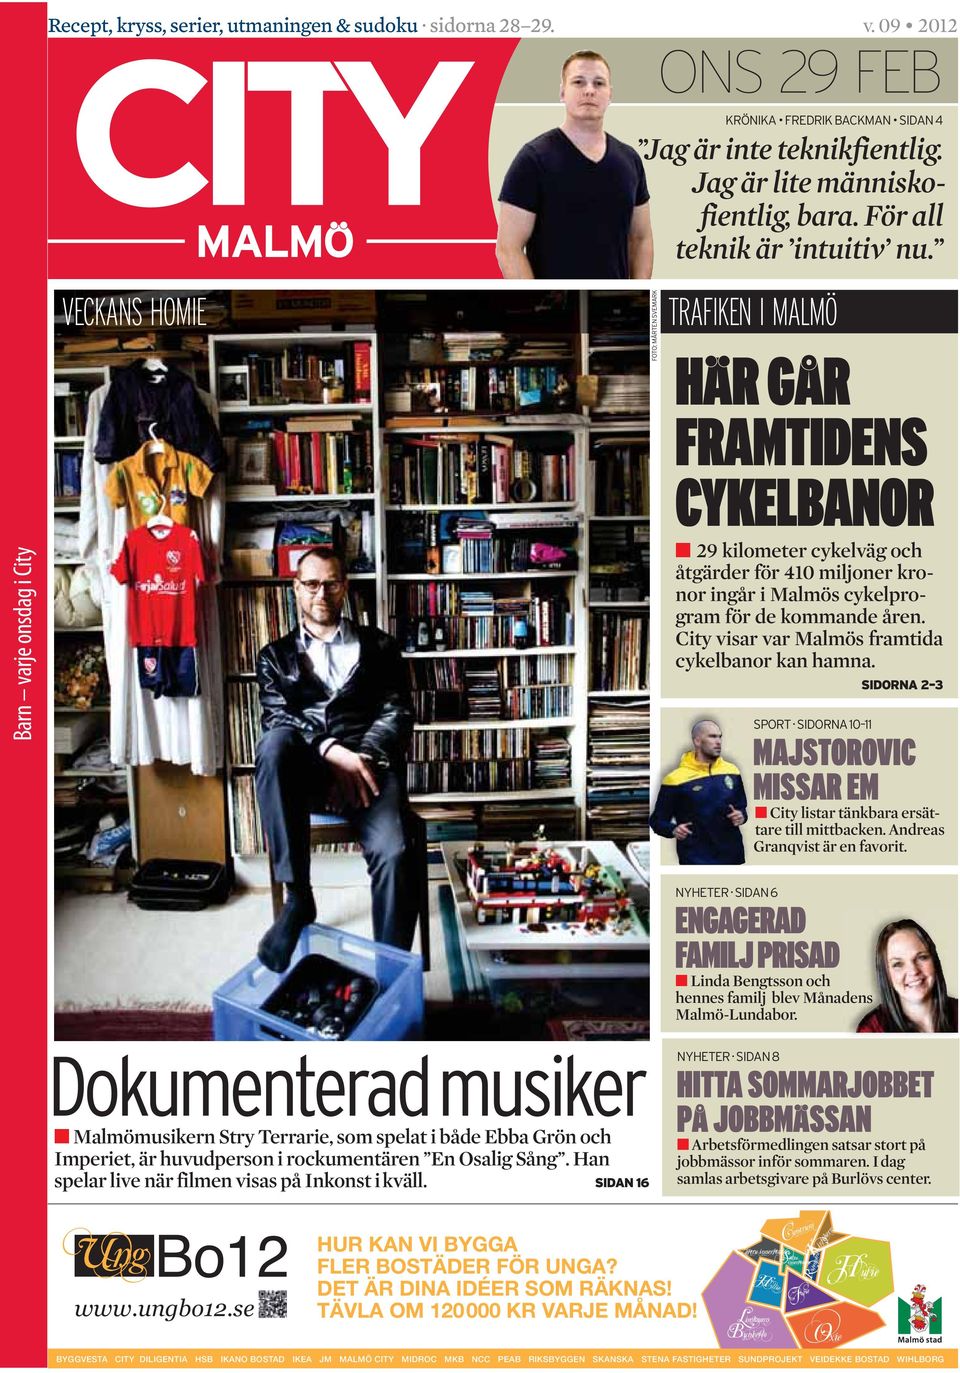 City visar var Malmös framtida cykelbanor kan hamna. MAJSTOROVIC MISSAR EM City listar tänkbara ersättare till mittbacken. Andreas Granqvist är en favorit.